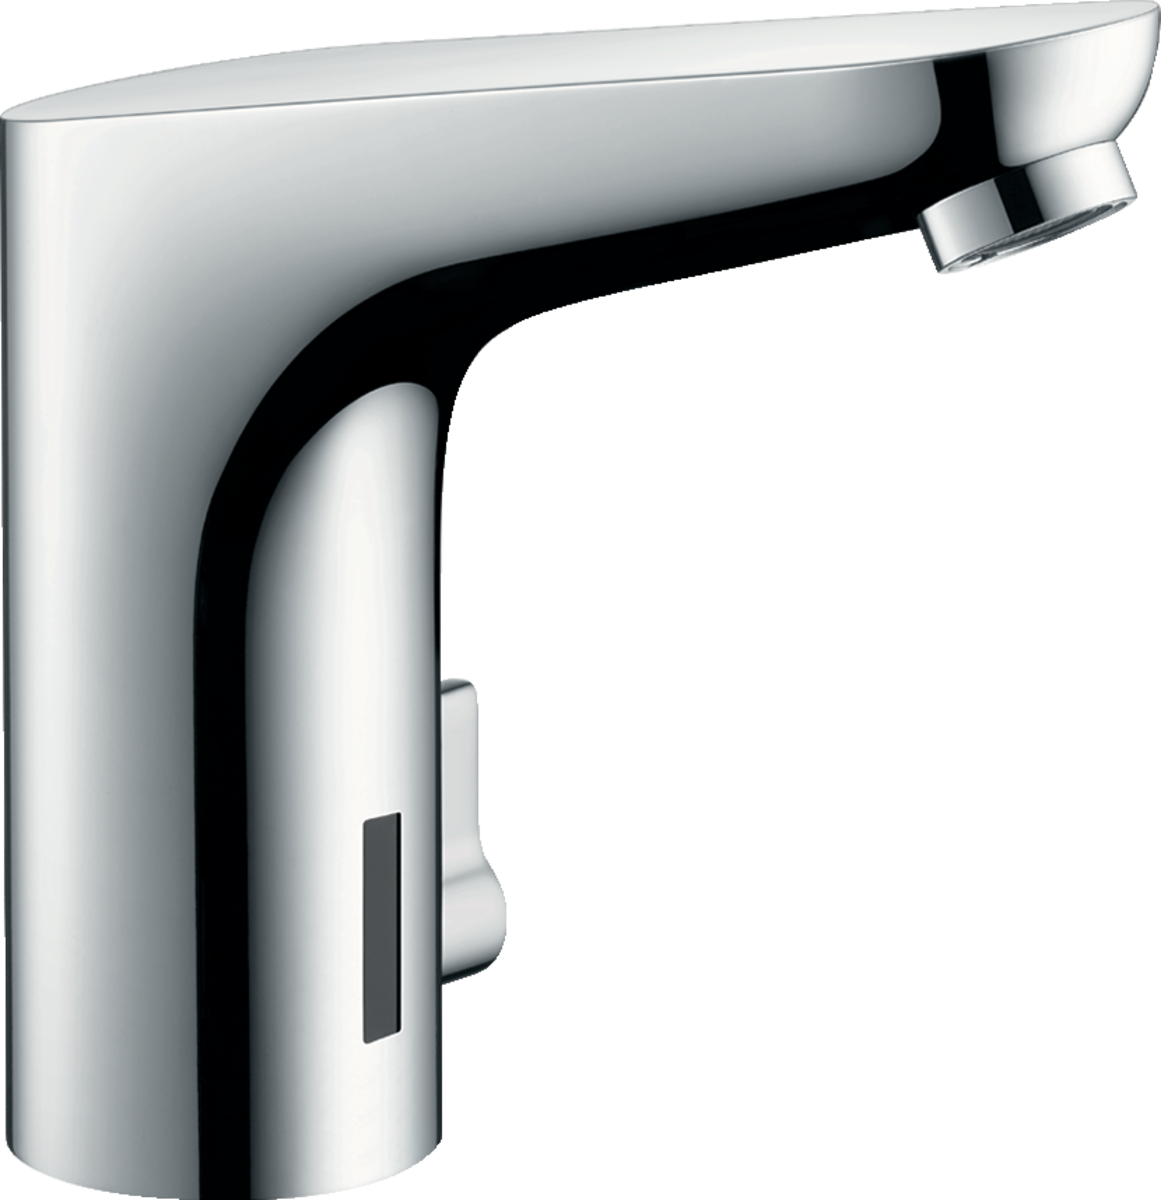 Håndvaskarmaturer: Focus, Elektronisk håndvaskarmatur 130 med temperaturregulering, 6 V, Art.nr. 31171000 Hansgrohe Pro DK